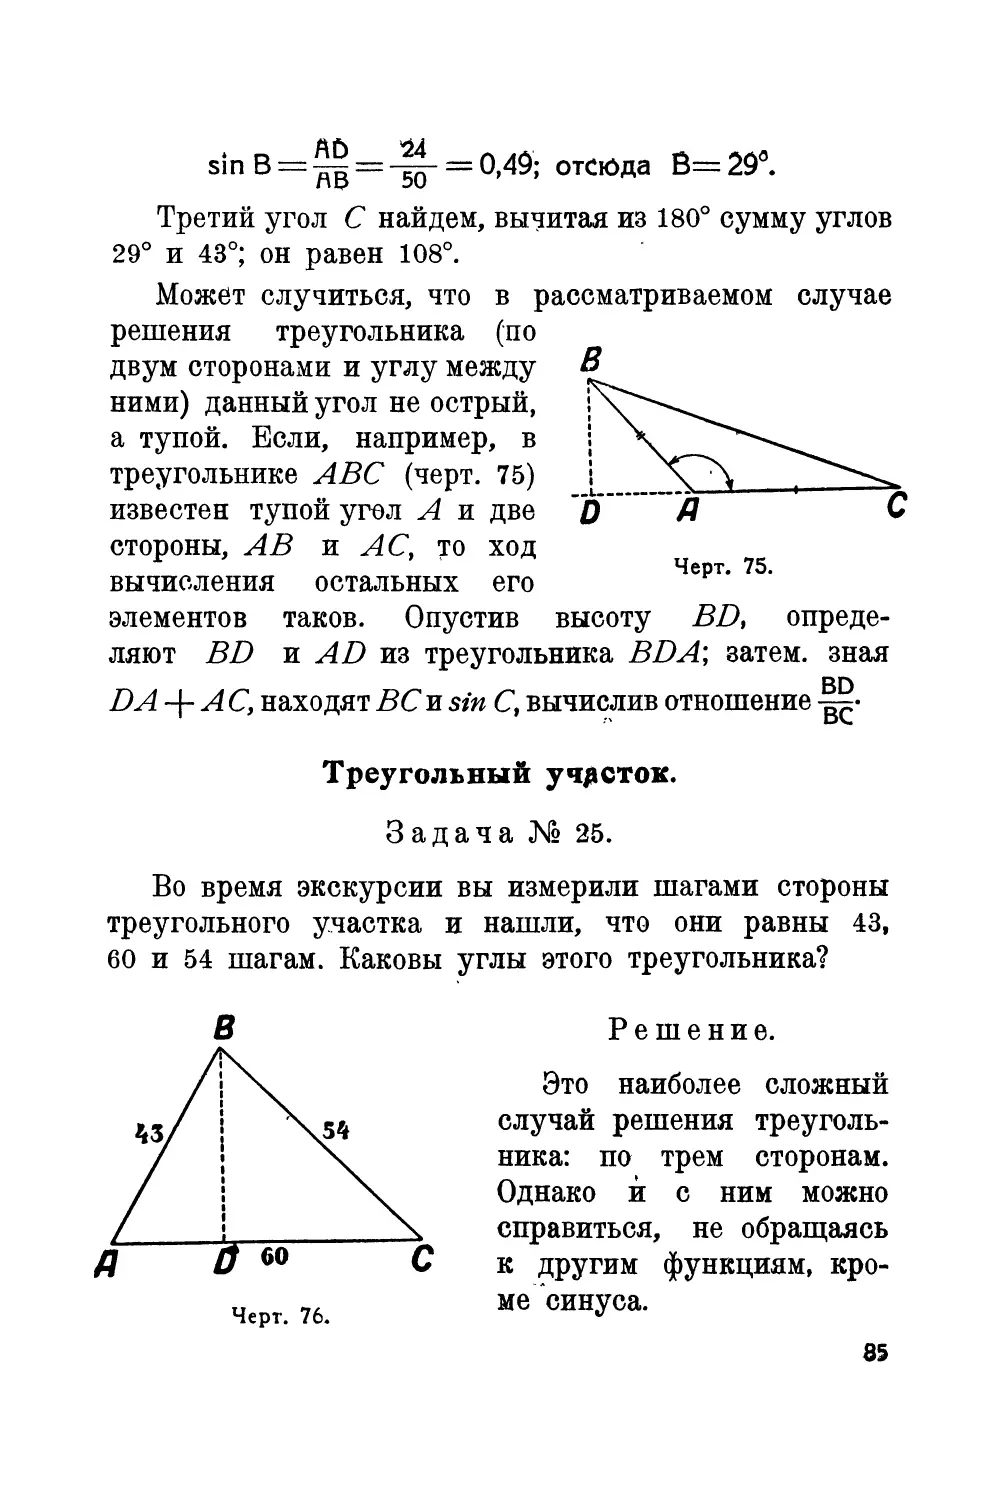 Треугольный участок